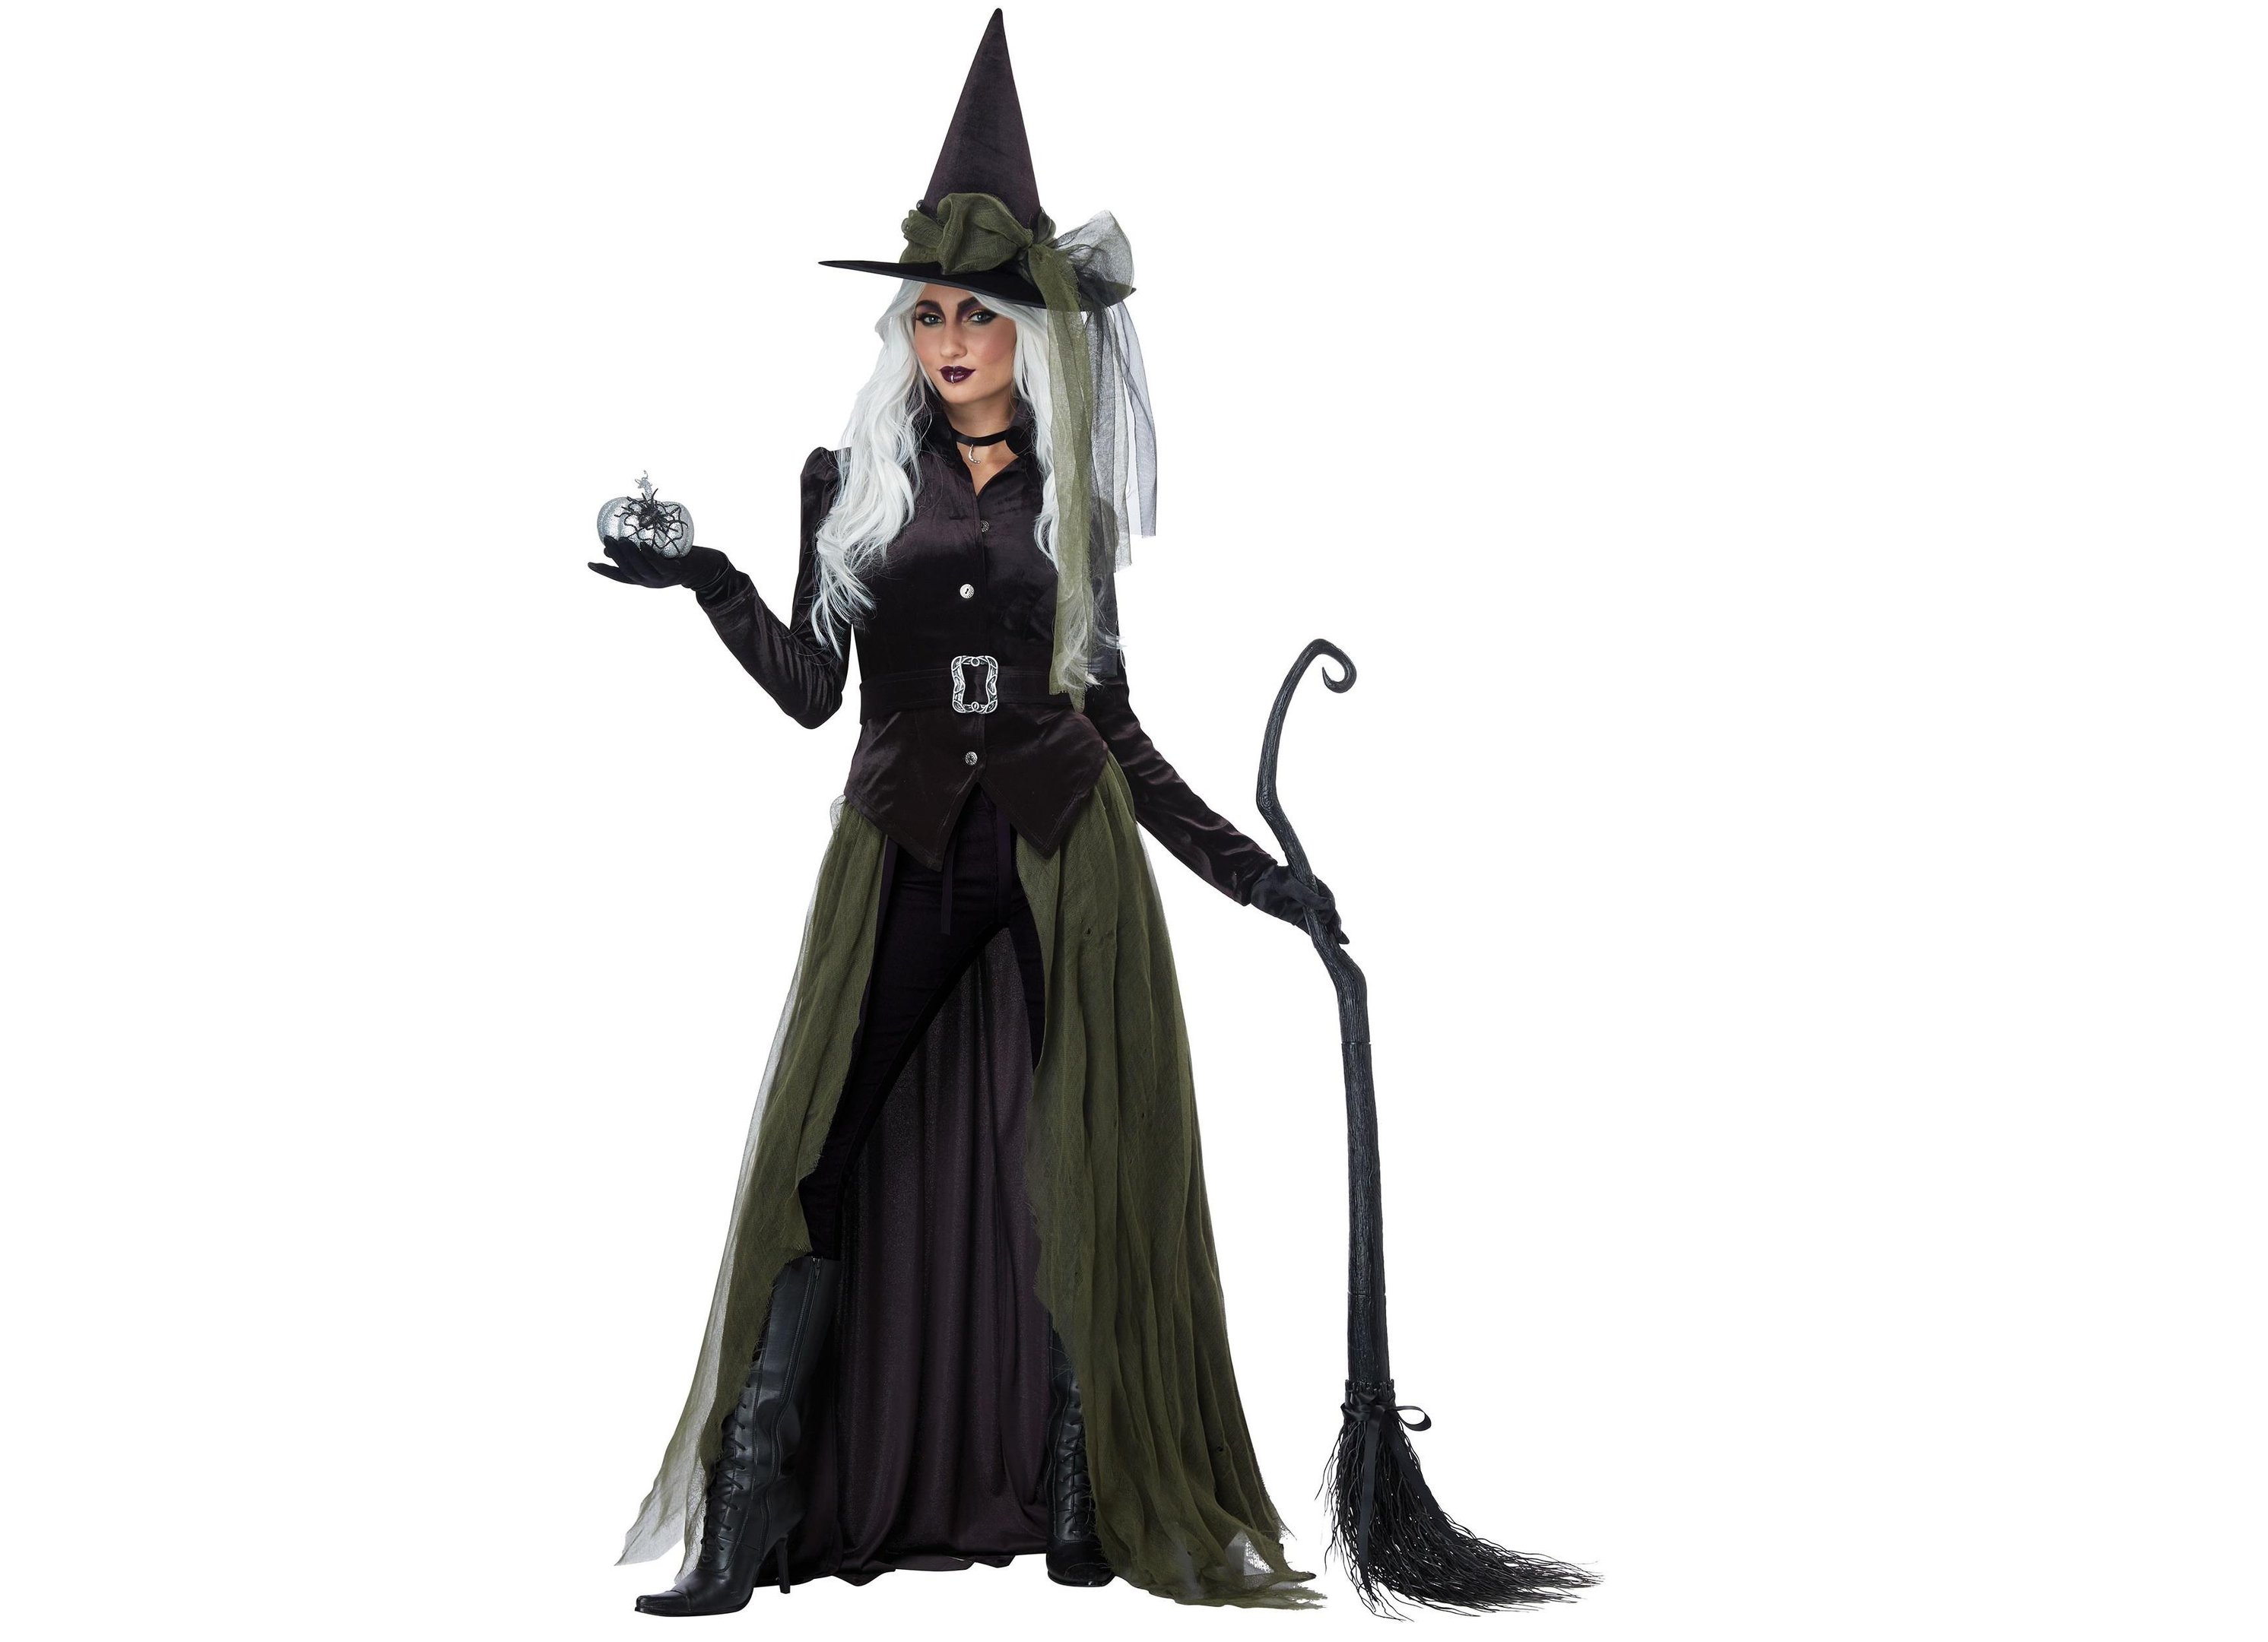 A fantasia de bruxa também é uma das mais tradicionais do Halloween